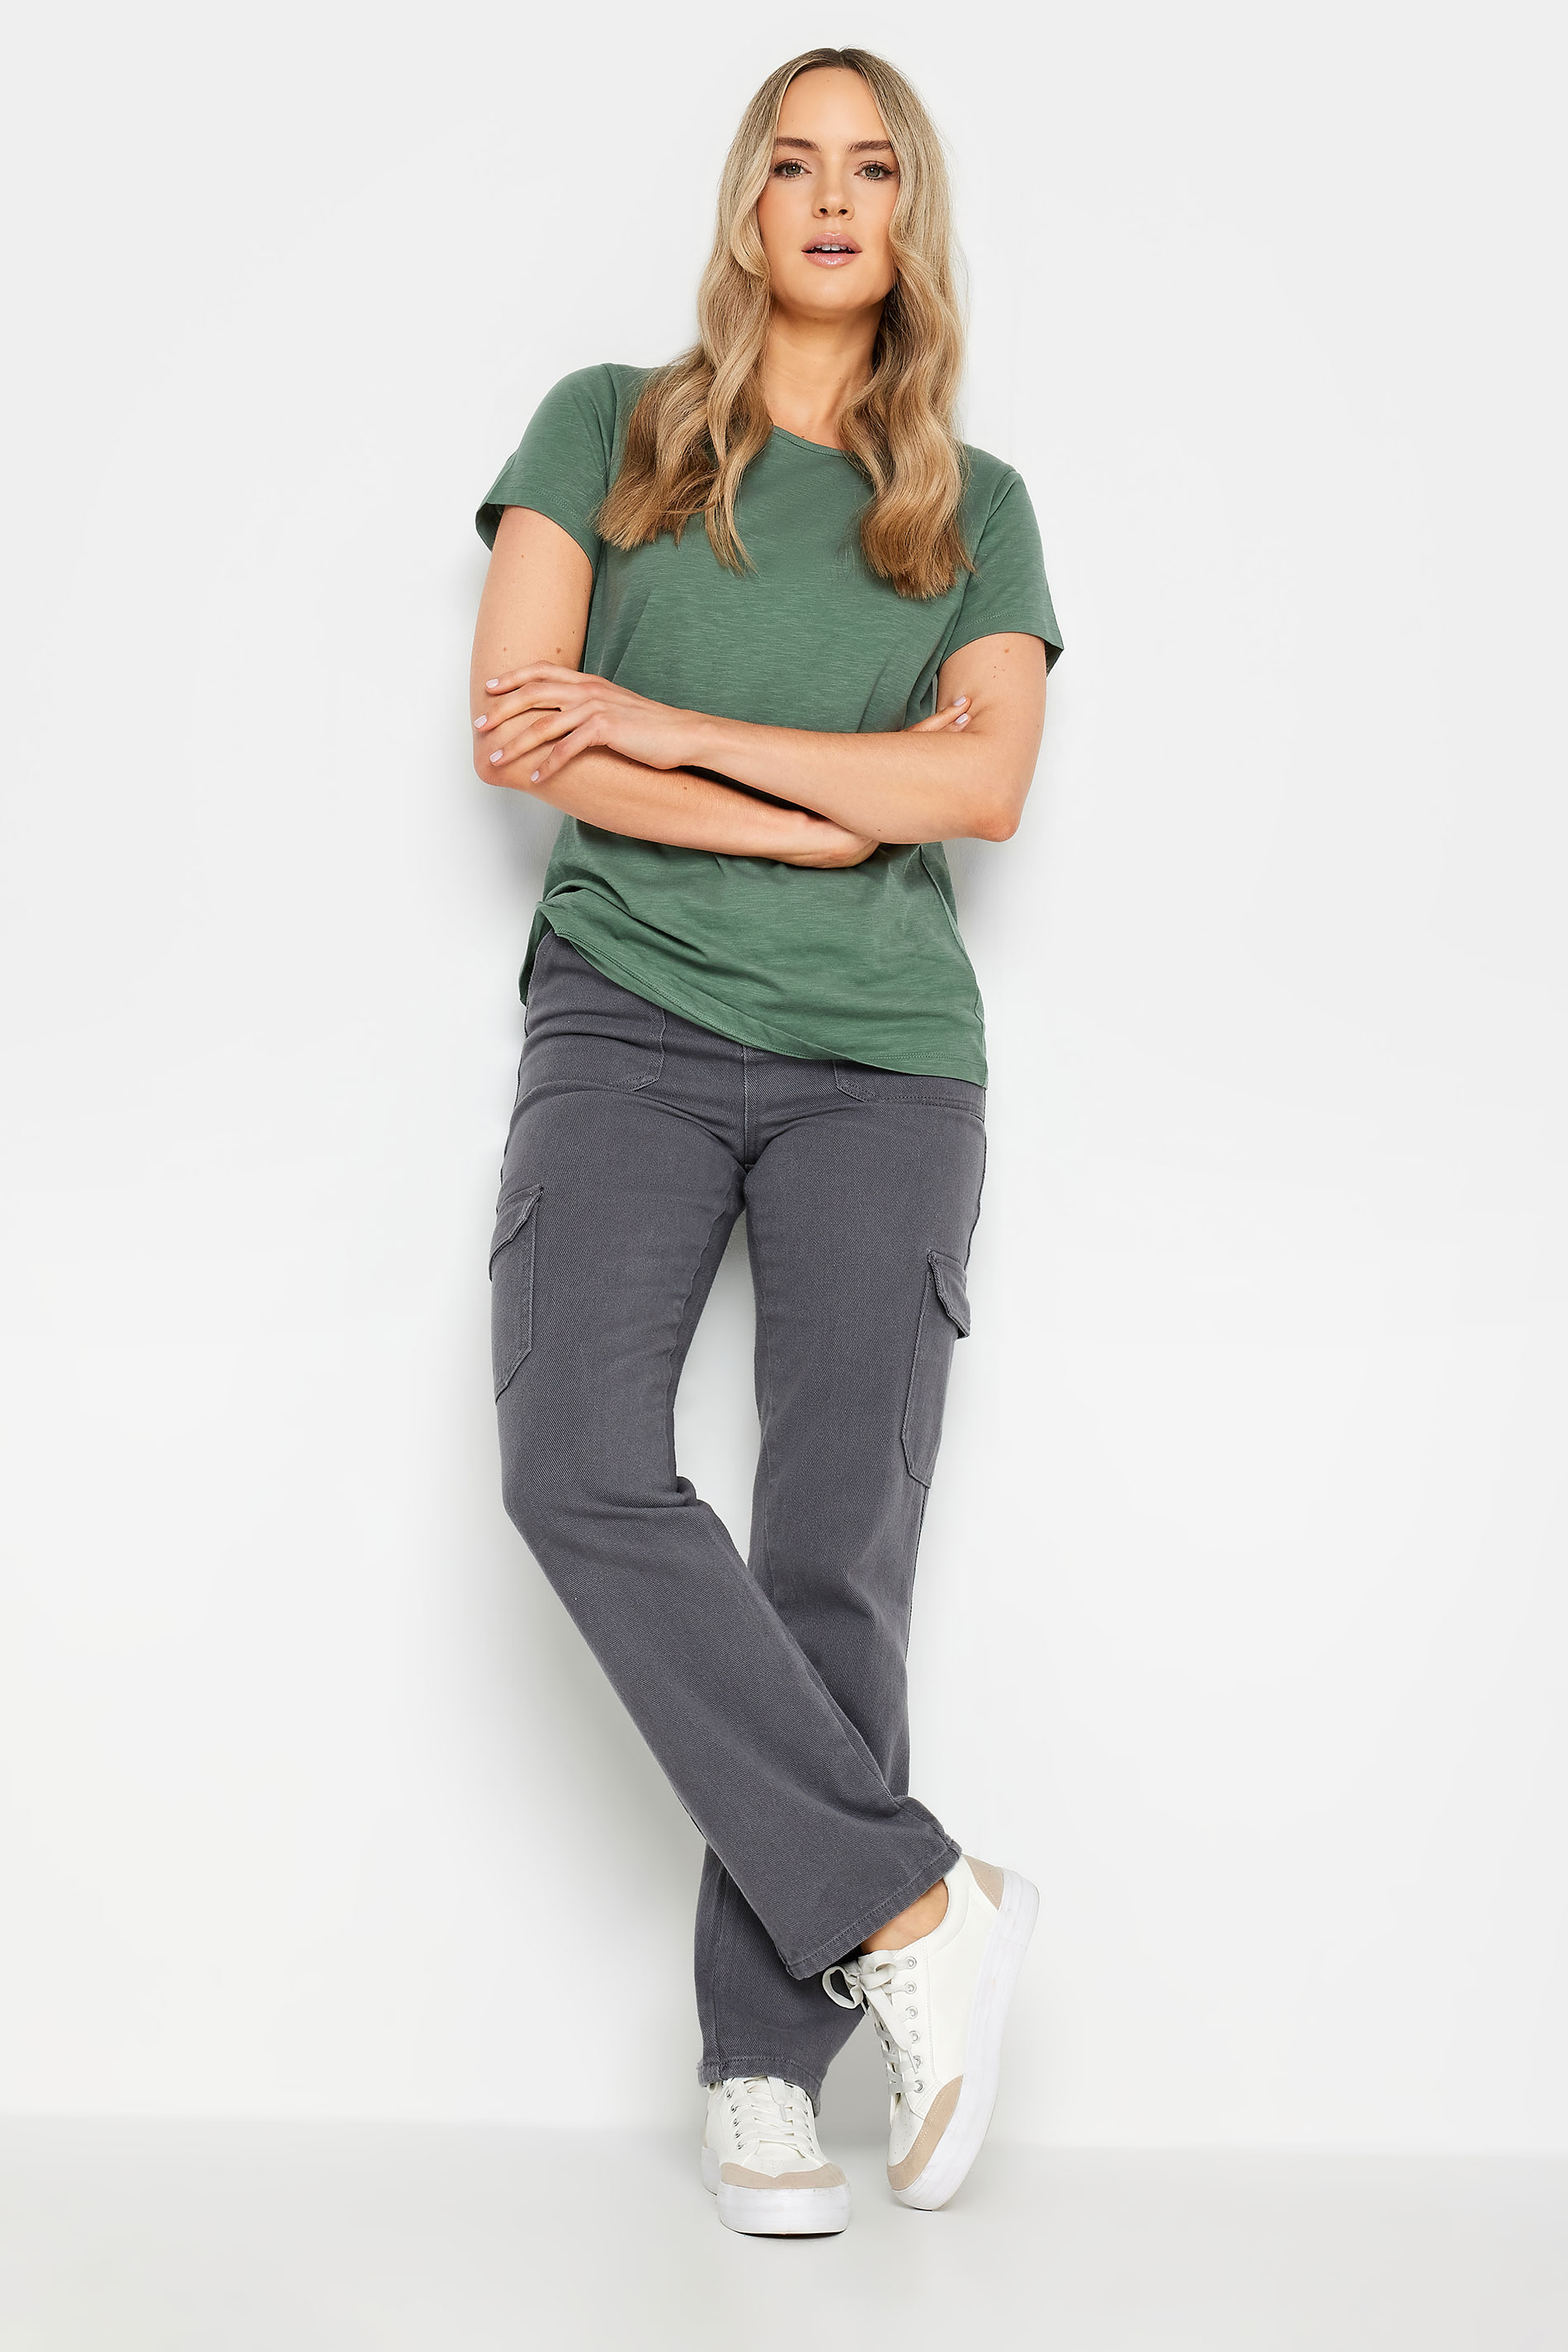 LTS Tall Womens Khaki Green Short Sleeve T-Shirt | Long Tall Sally 2